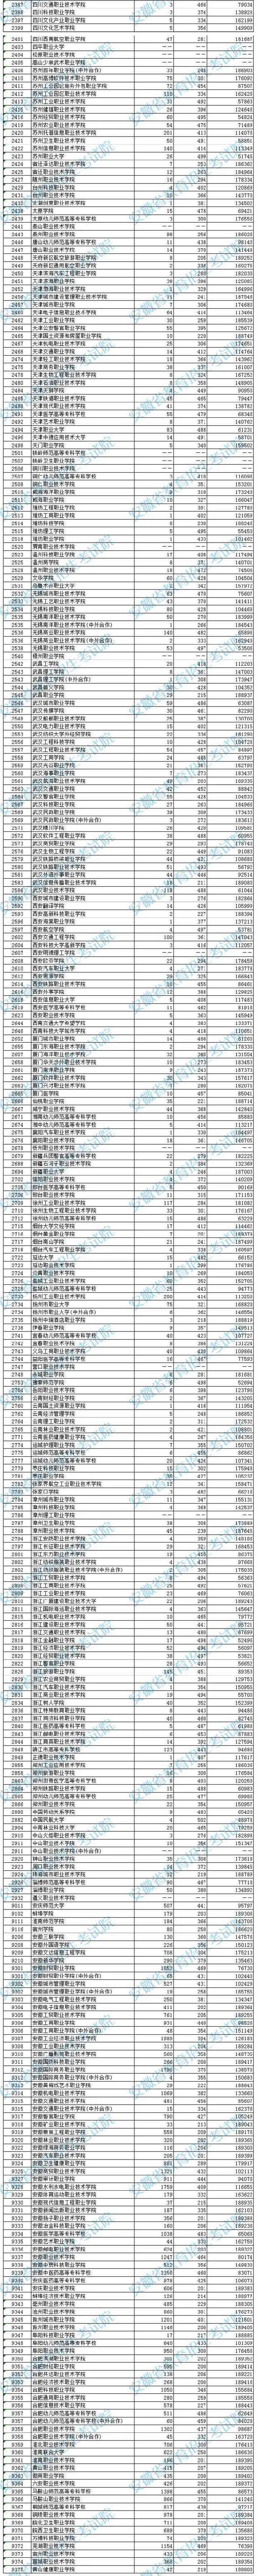 2020安徽专科院校文史类投档分数及院校排名一览表